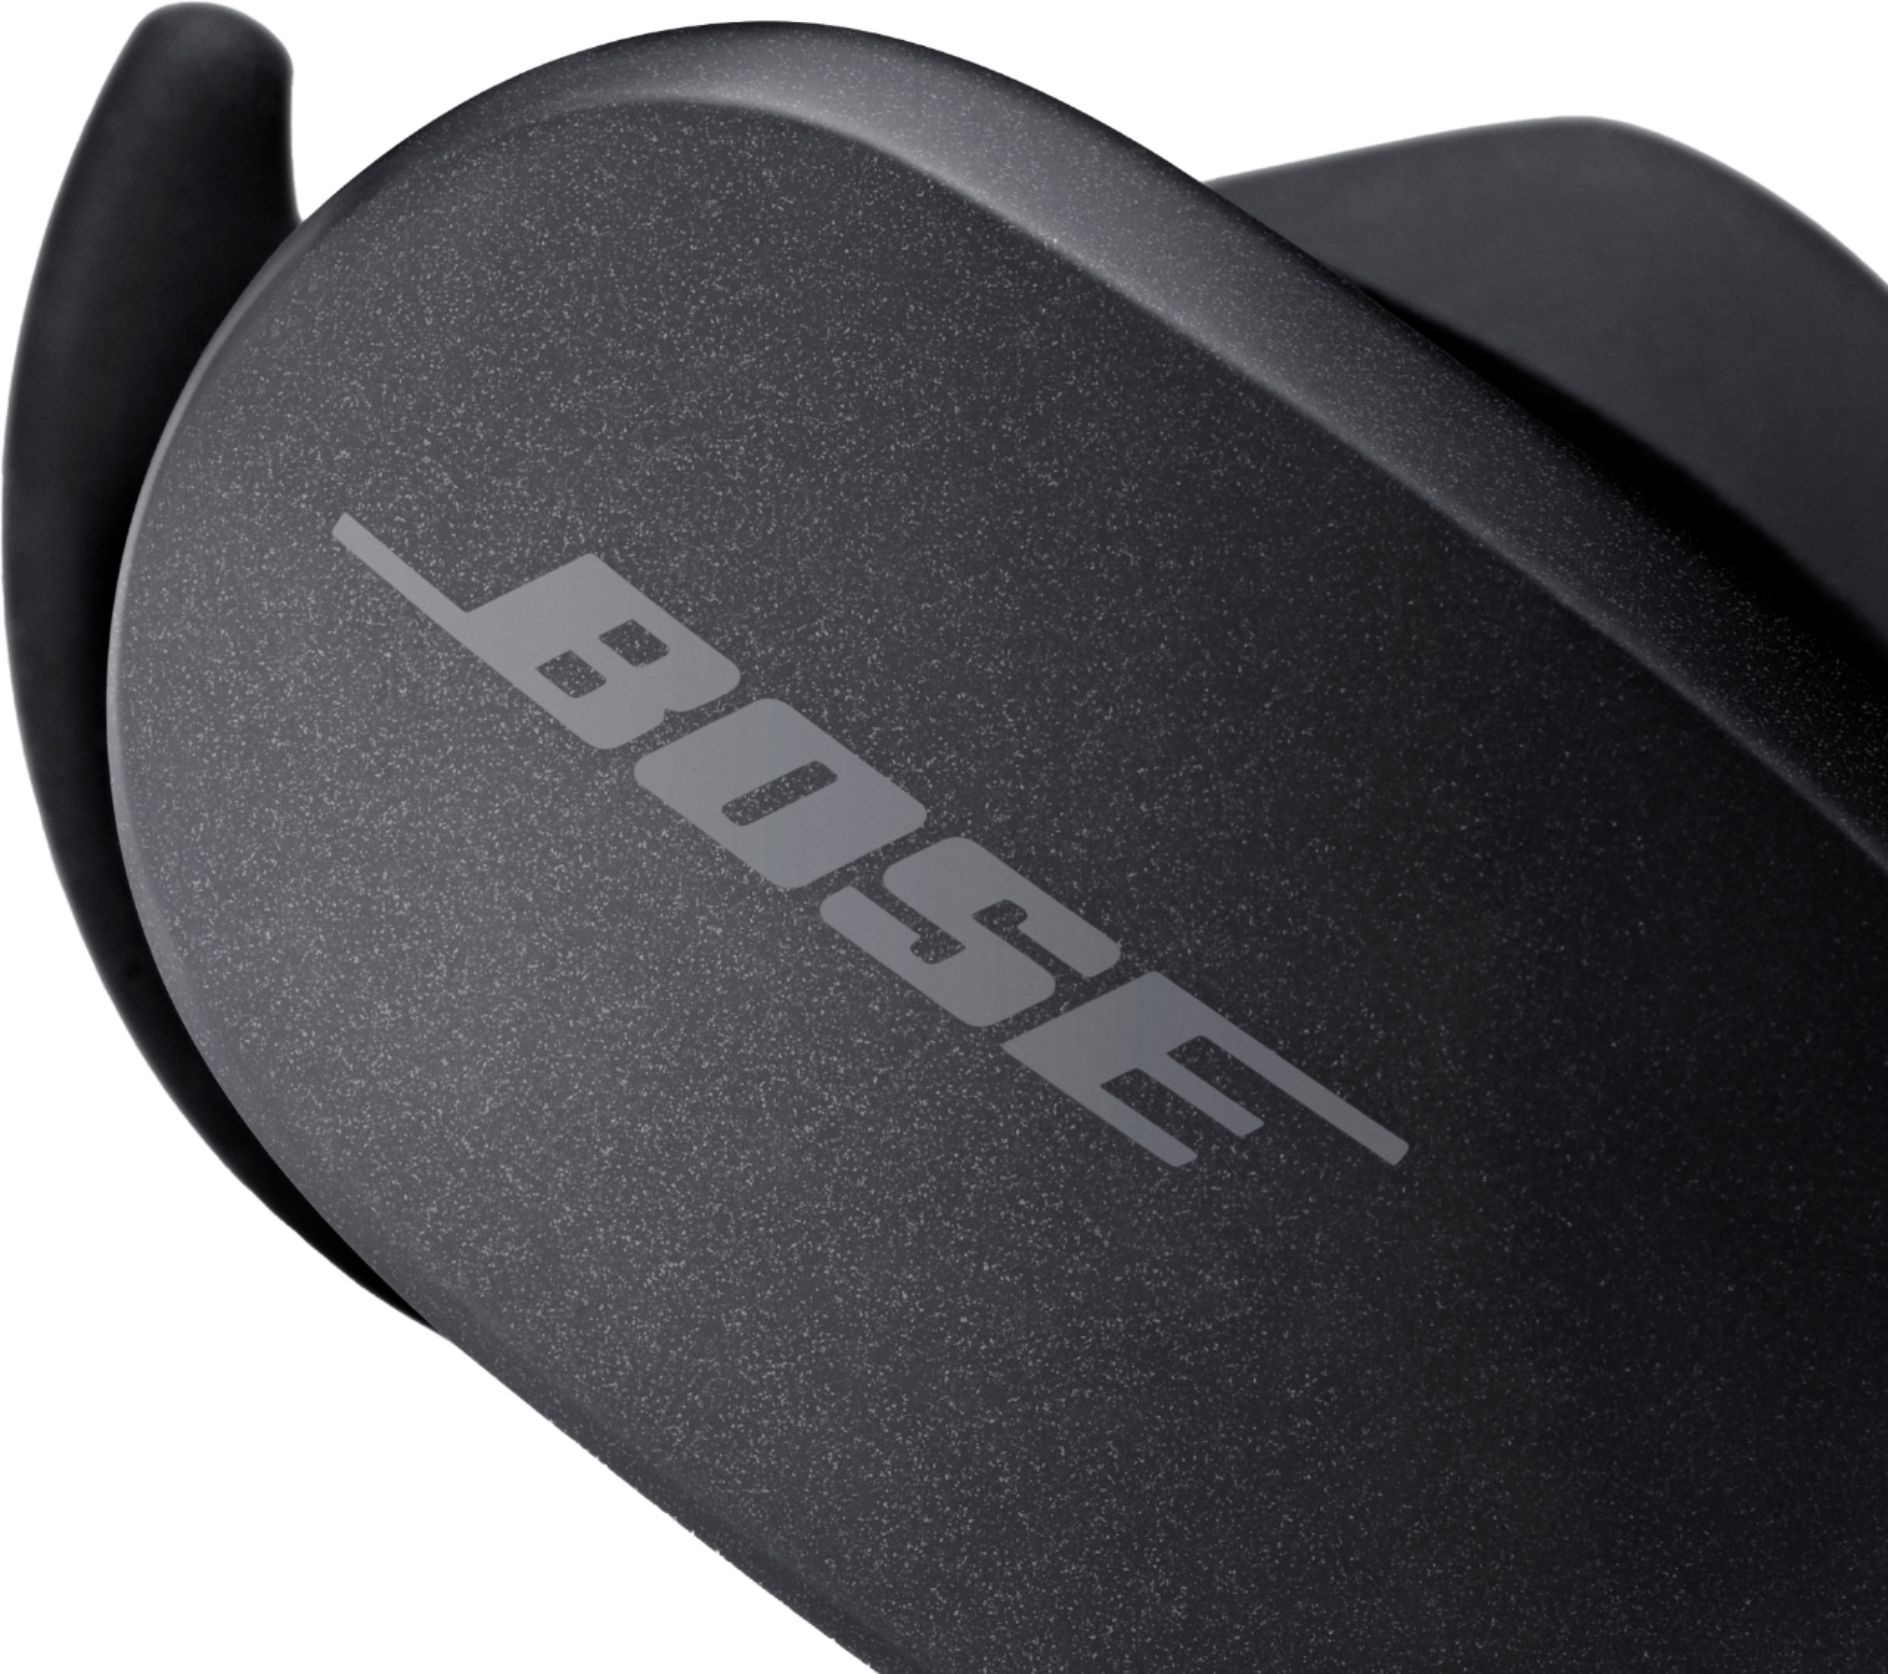 Bose - QuietComfort Earbuds True Wireless Noise Cancelling In-Ear Earbuds -  Triple Black